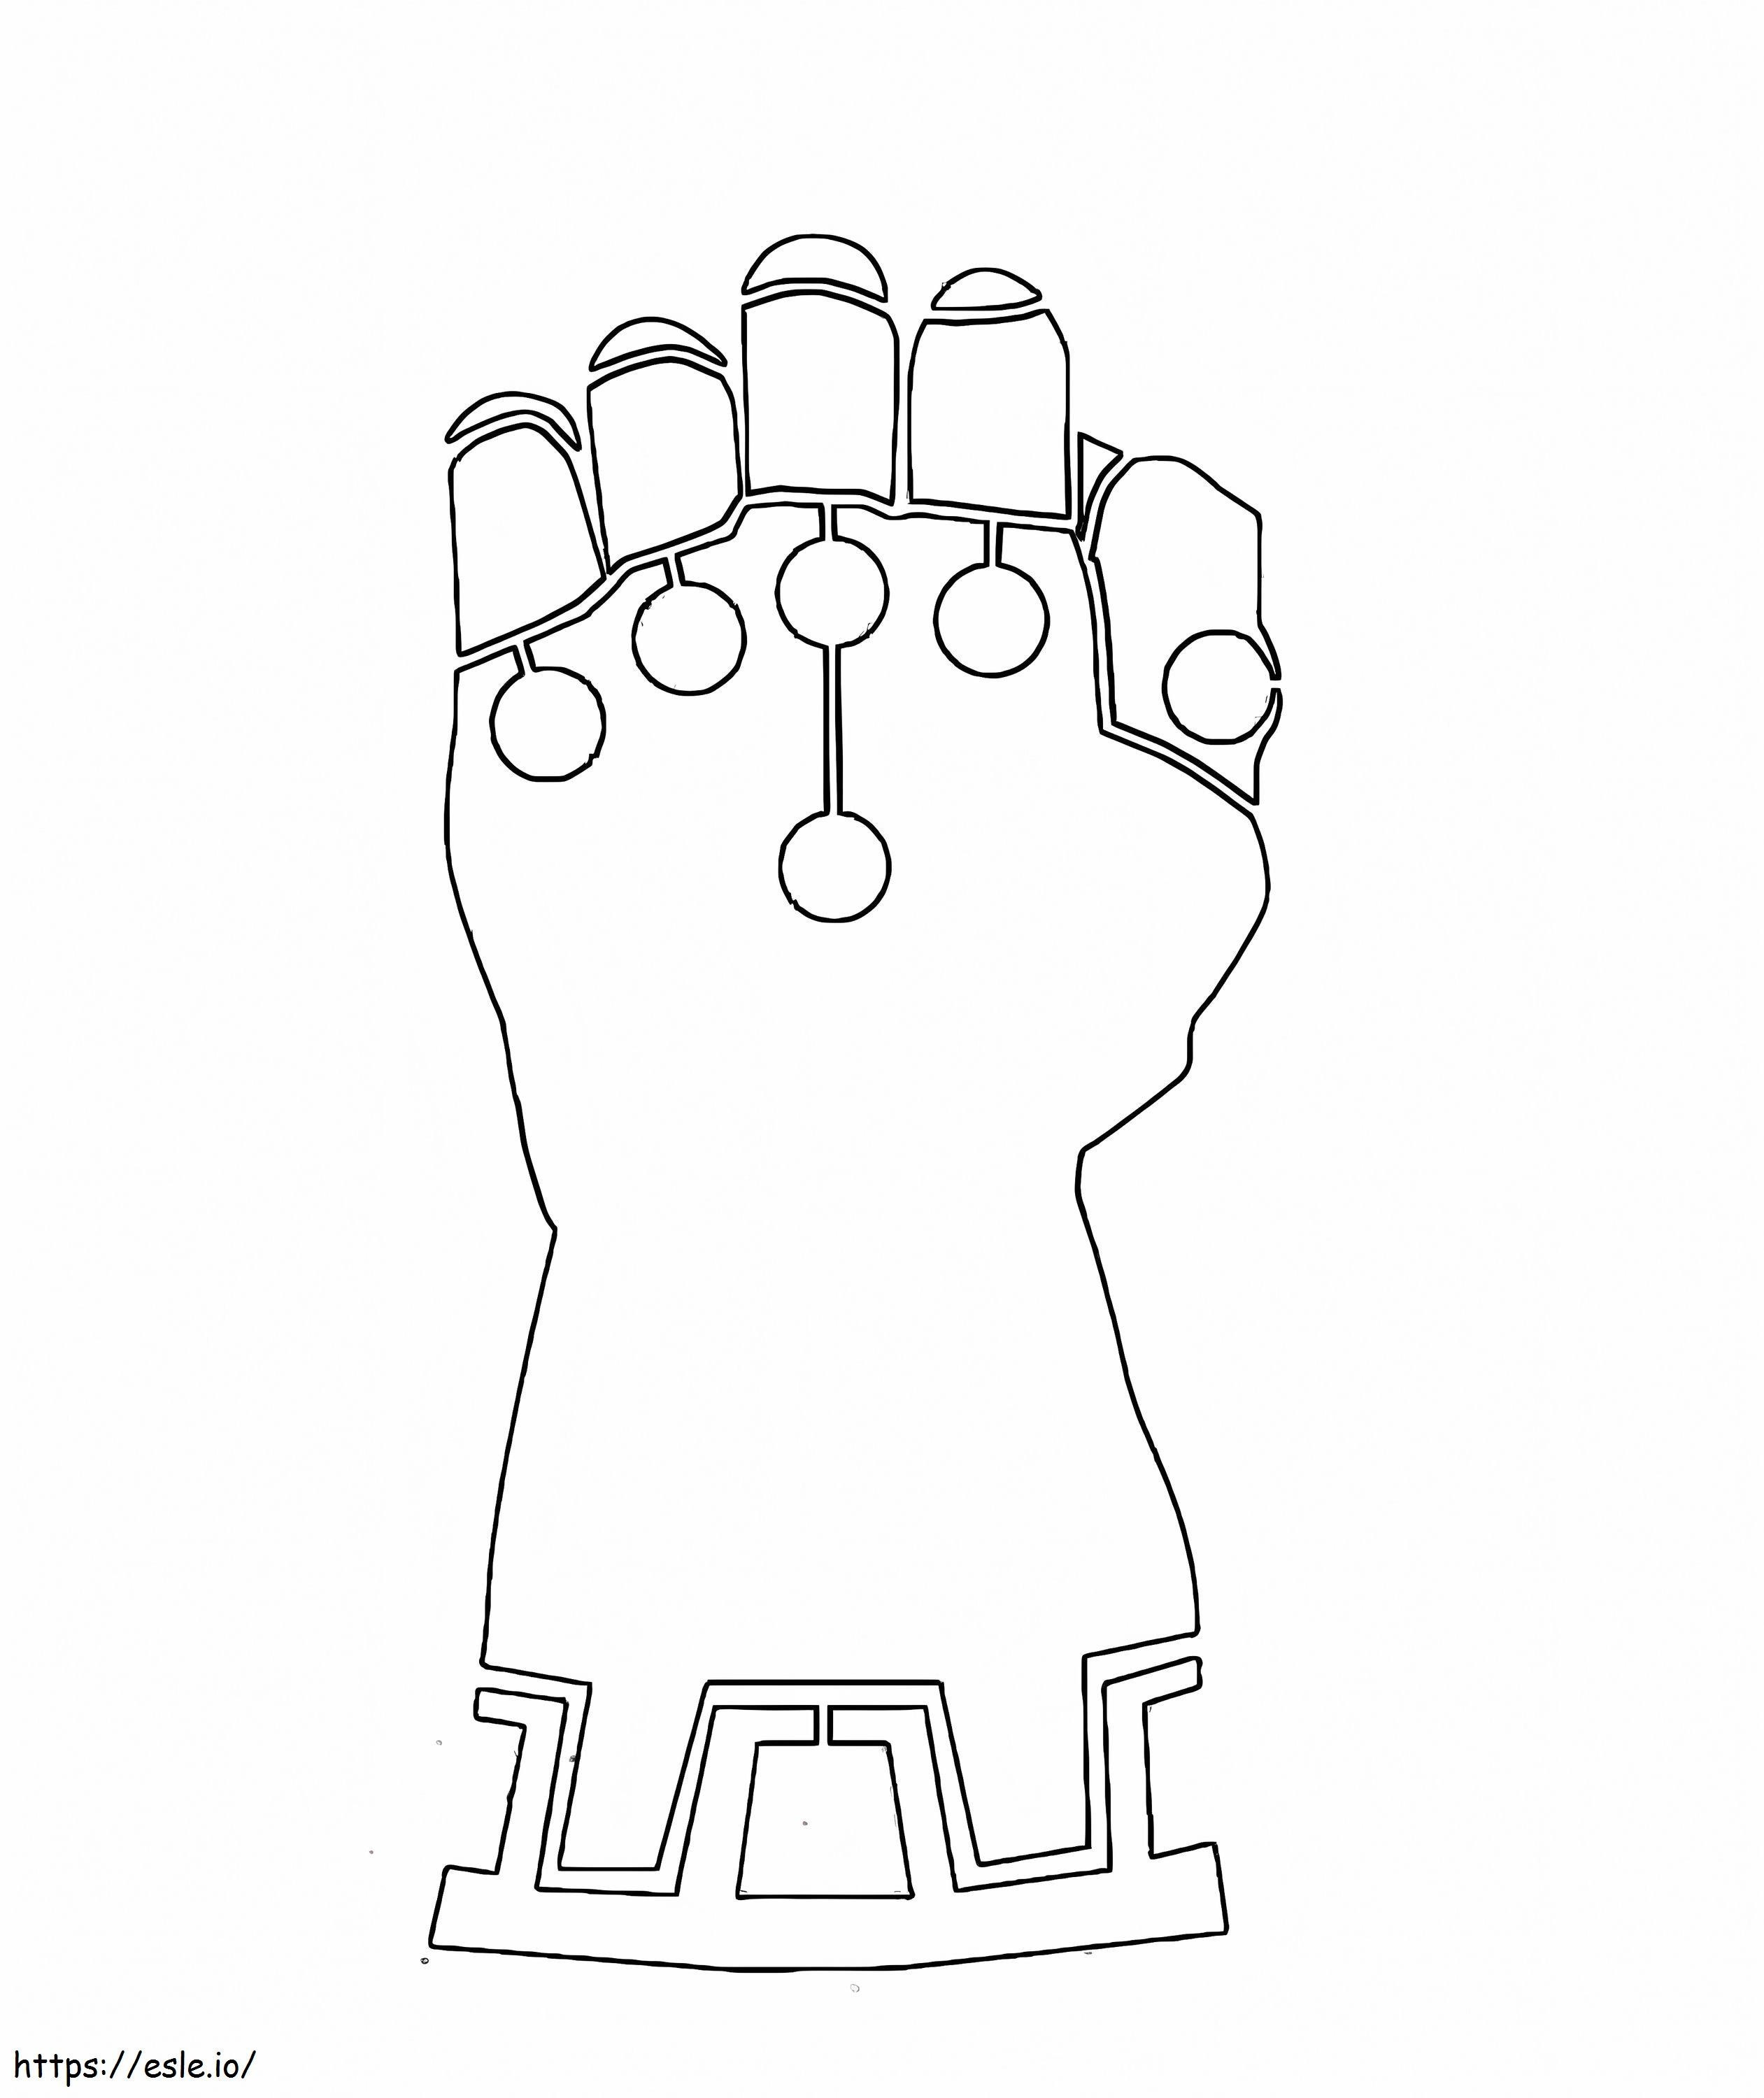 Einfacher Infinity-Handschuh ausmalbilder